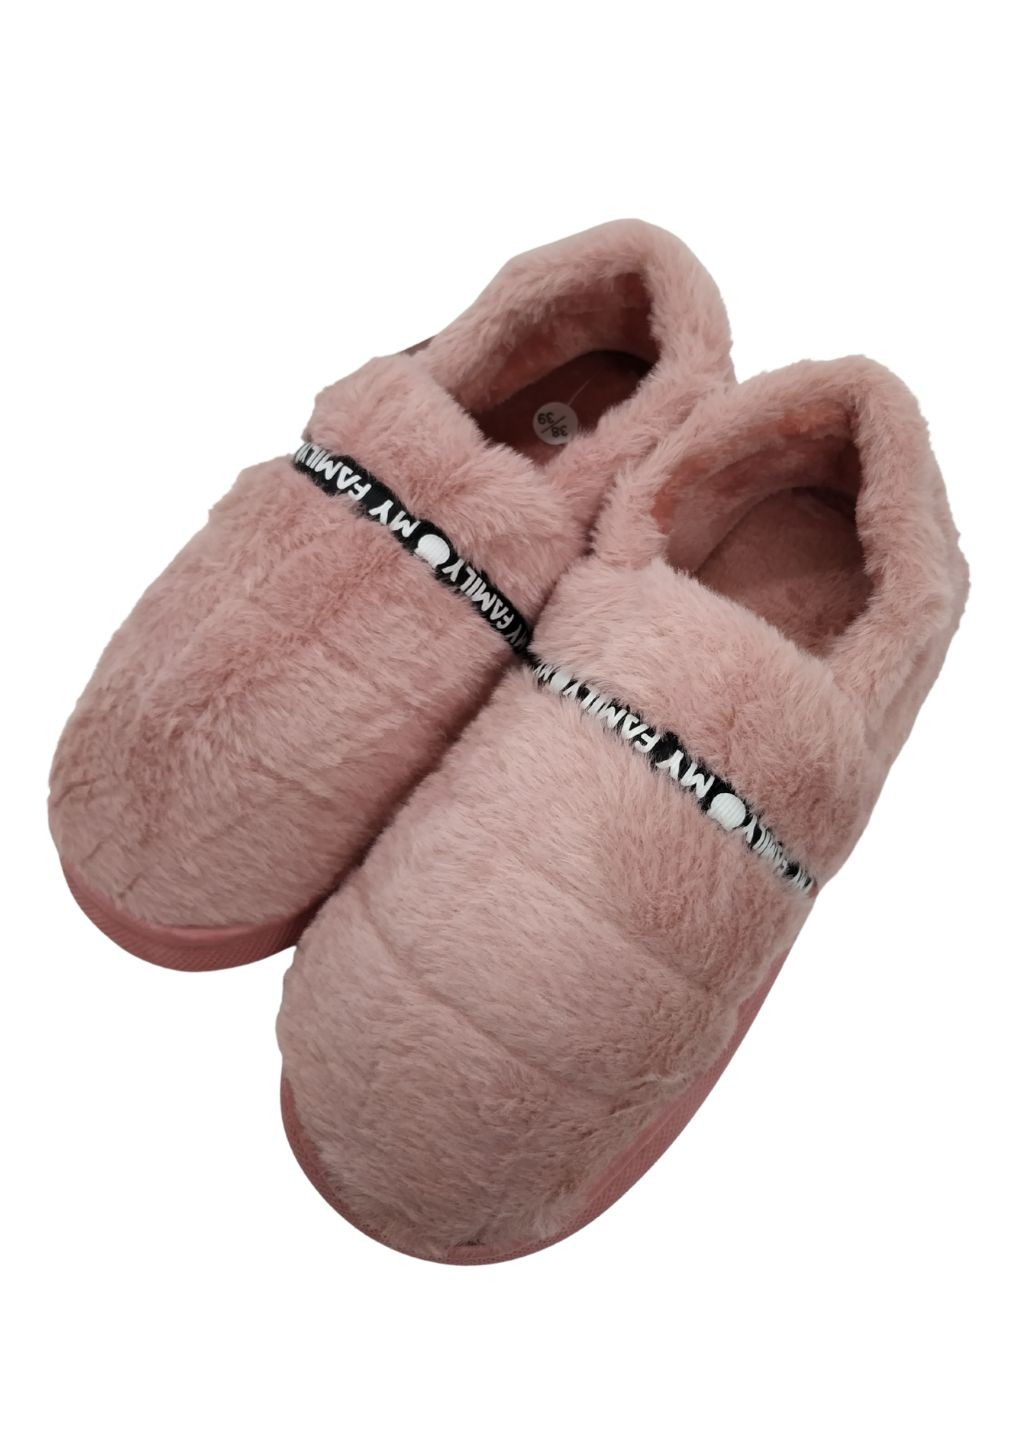 Хатні капці-чобітки жіночі Пухнастики рожеві Scarrhett рожевий домашній